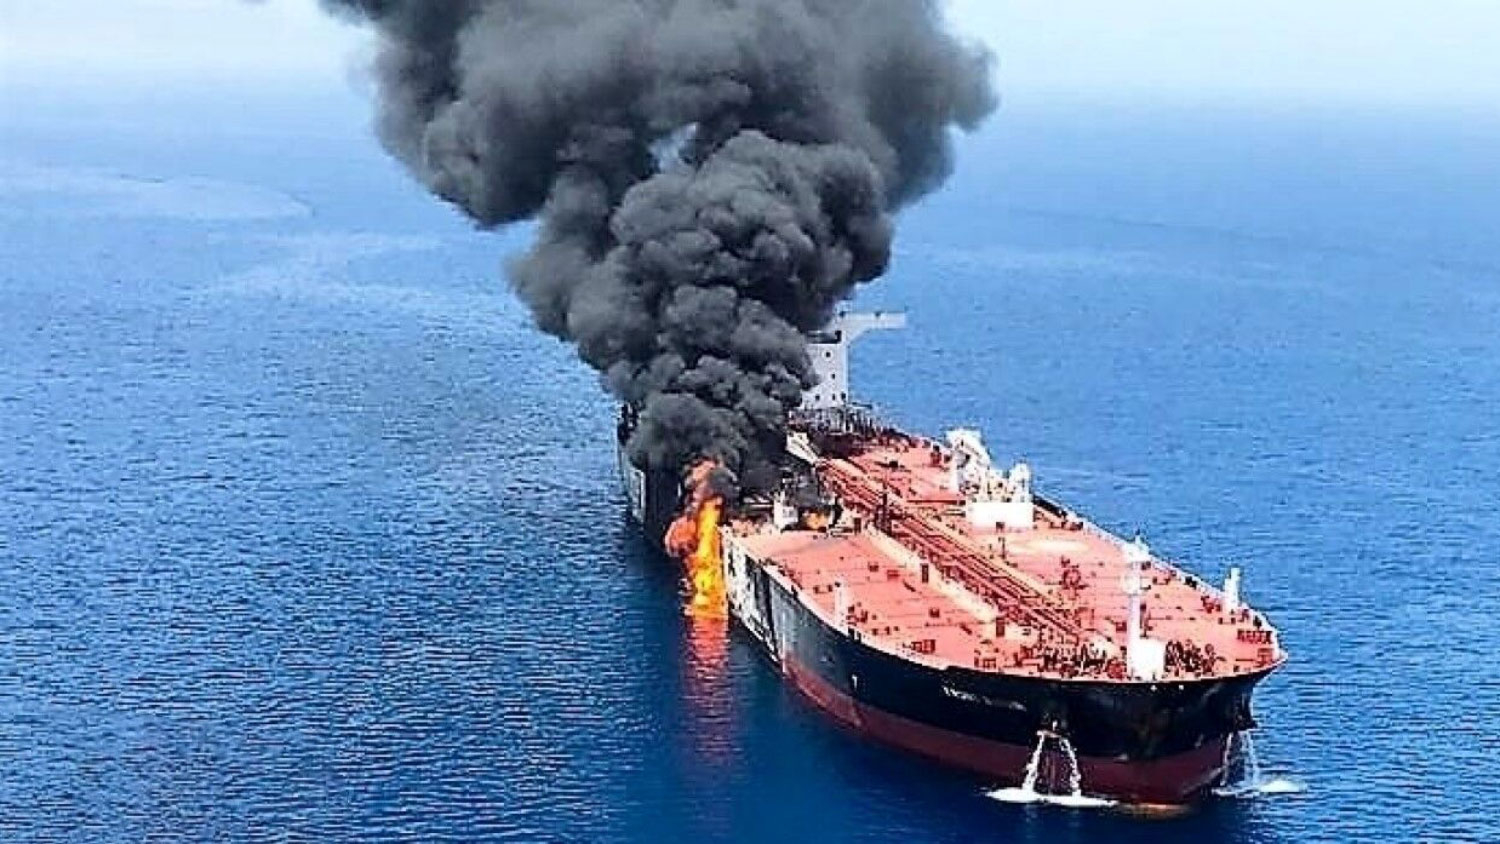 Опубликованы переговоры экипажа взорвавшегося танкера "Генерал Ази Асланов" - АУДИО